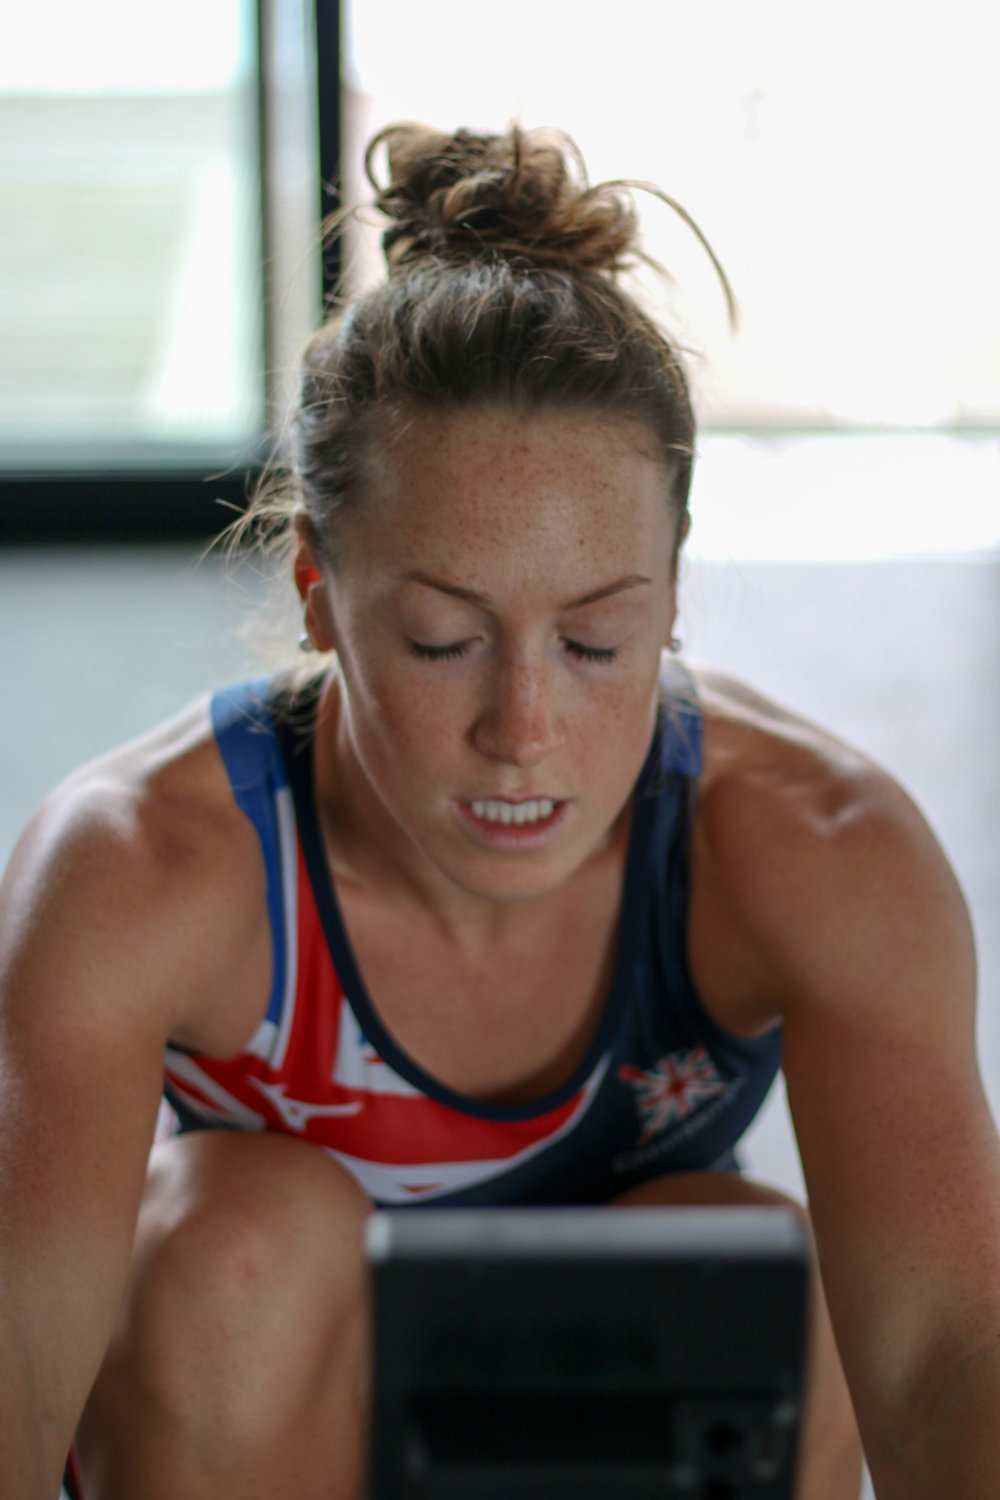 womens-sport-karen-bennett-rowing-athlete09.jpg